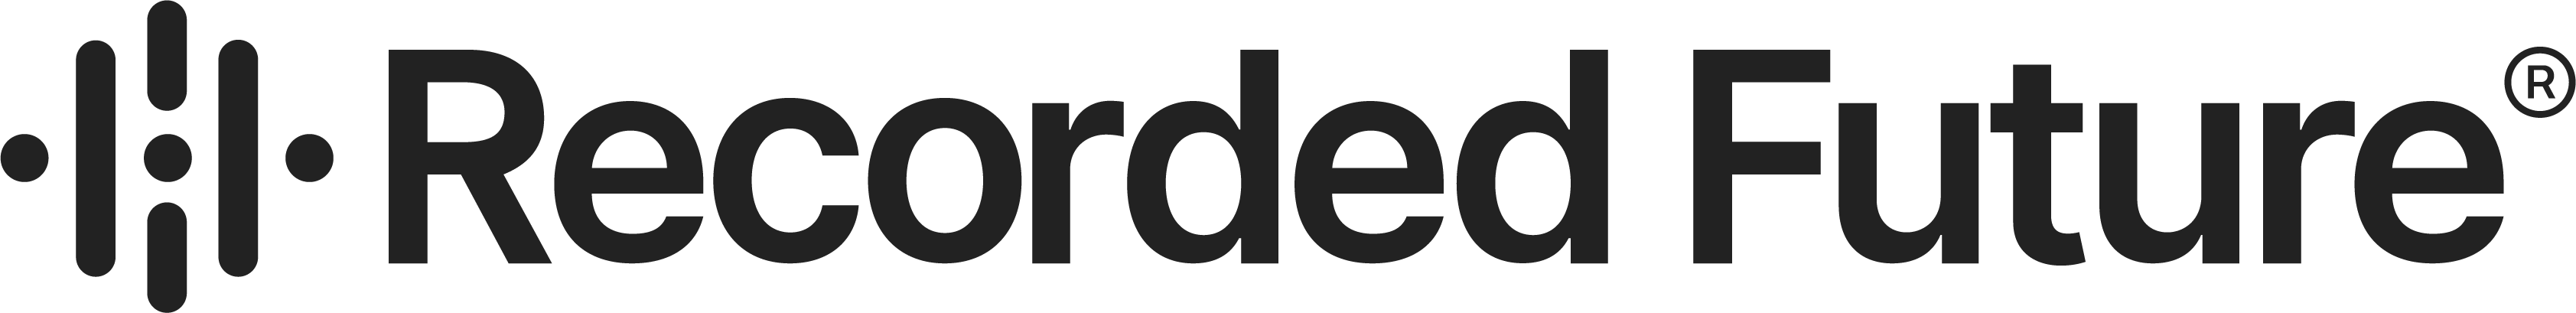 Primary Logo - Digital (RGB)